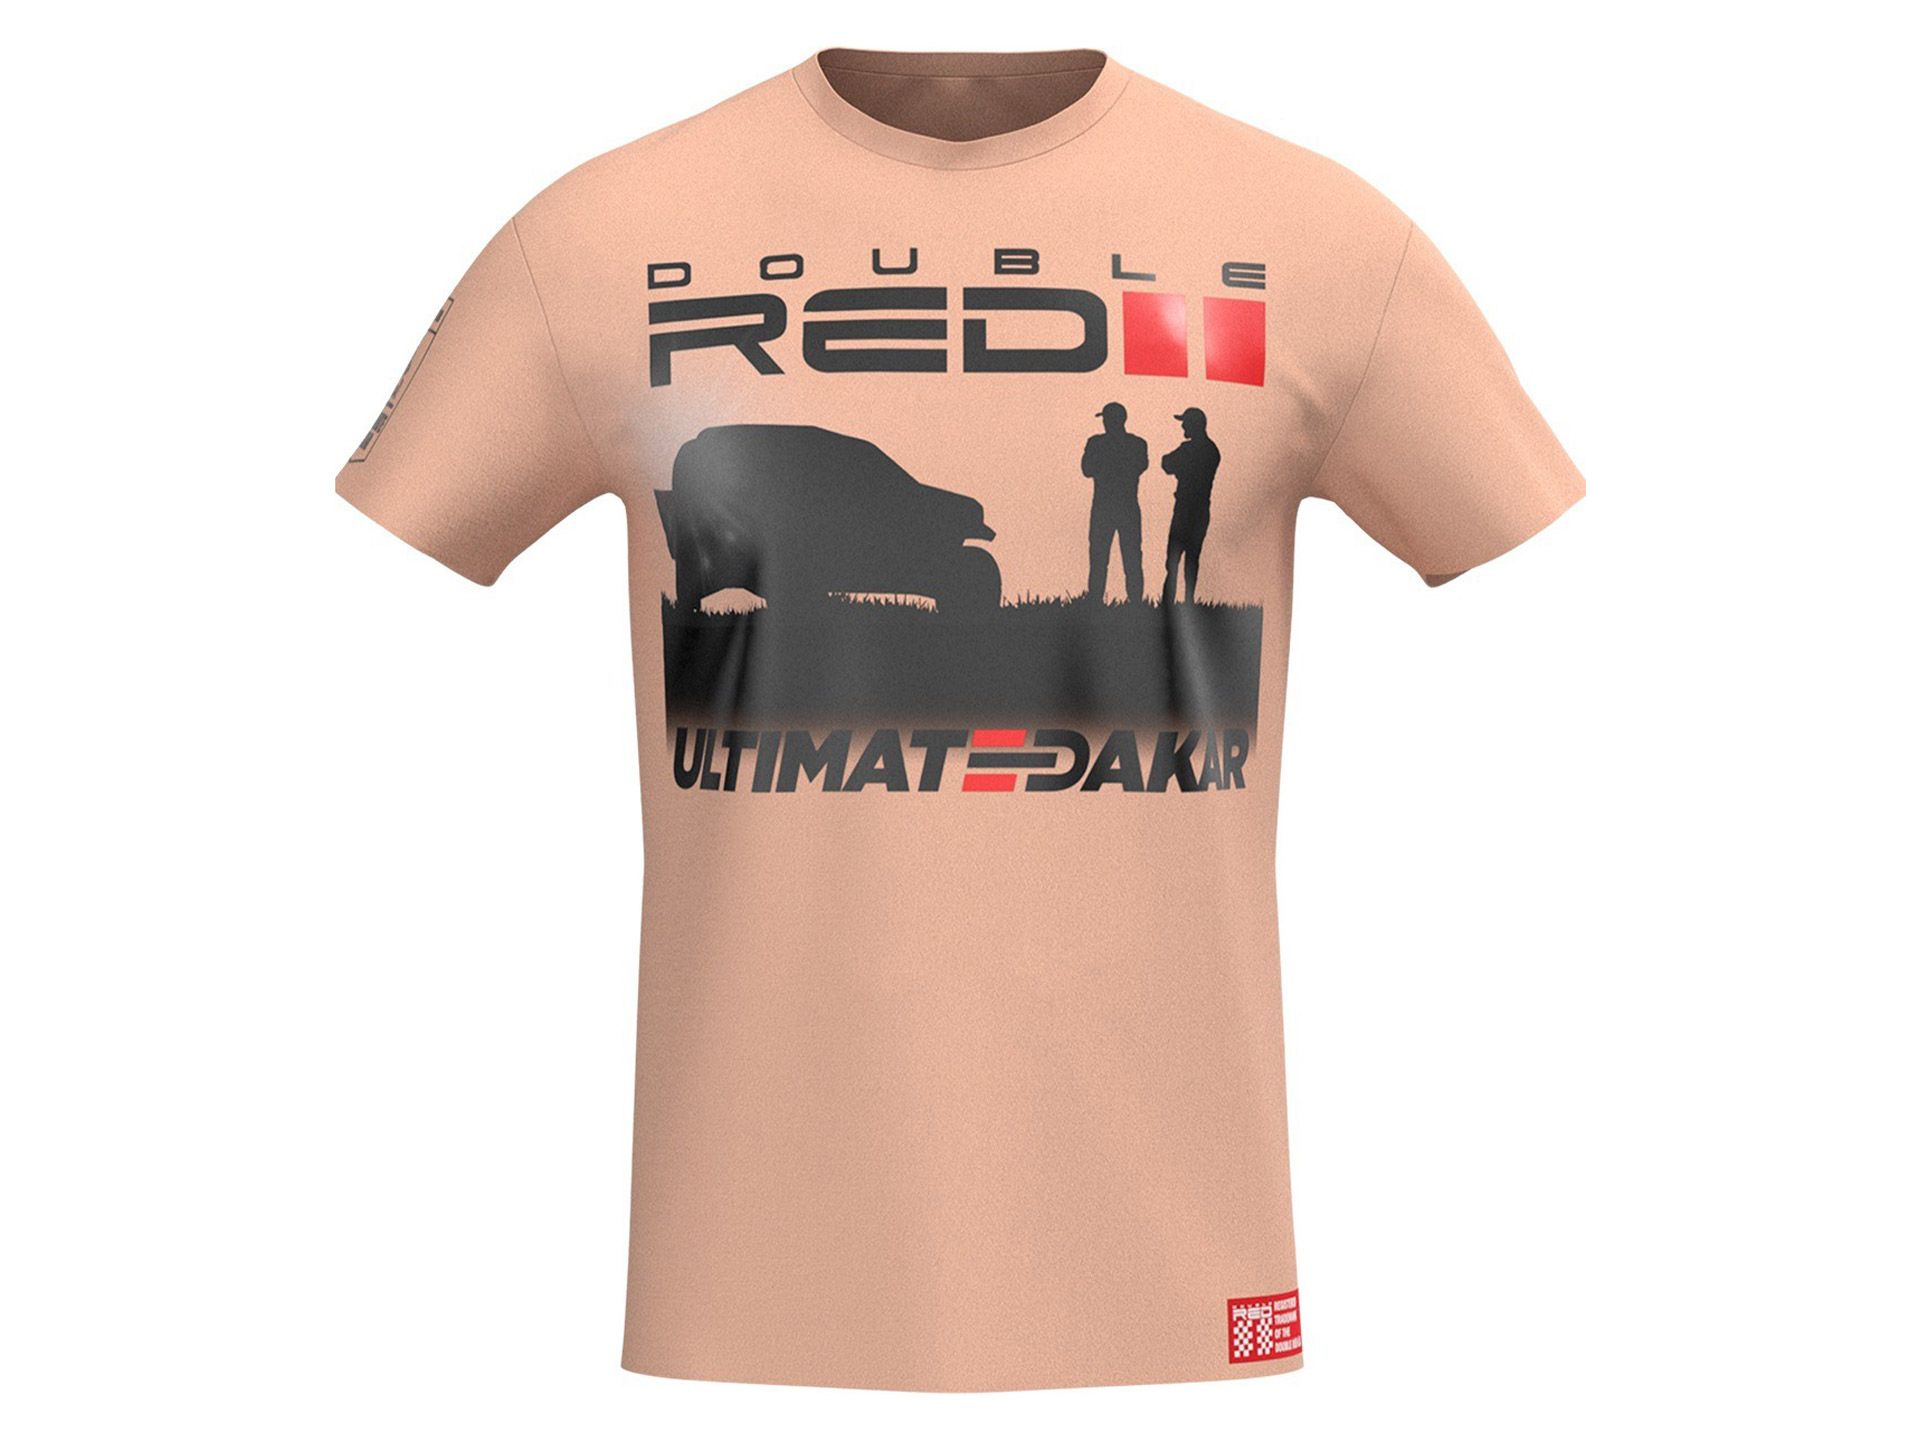 Obrázek galerie Tričko Ultimate Dakar Racing – Kolekce Double Red 2021 – Unisex písečná – XL